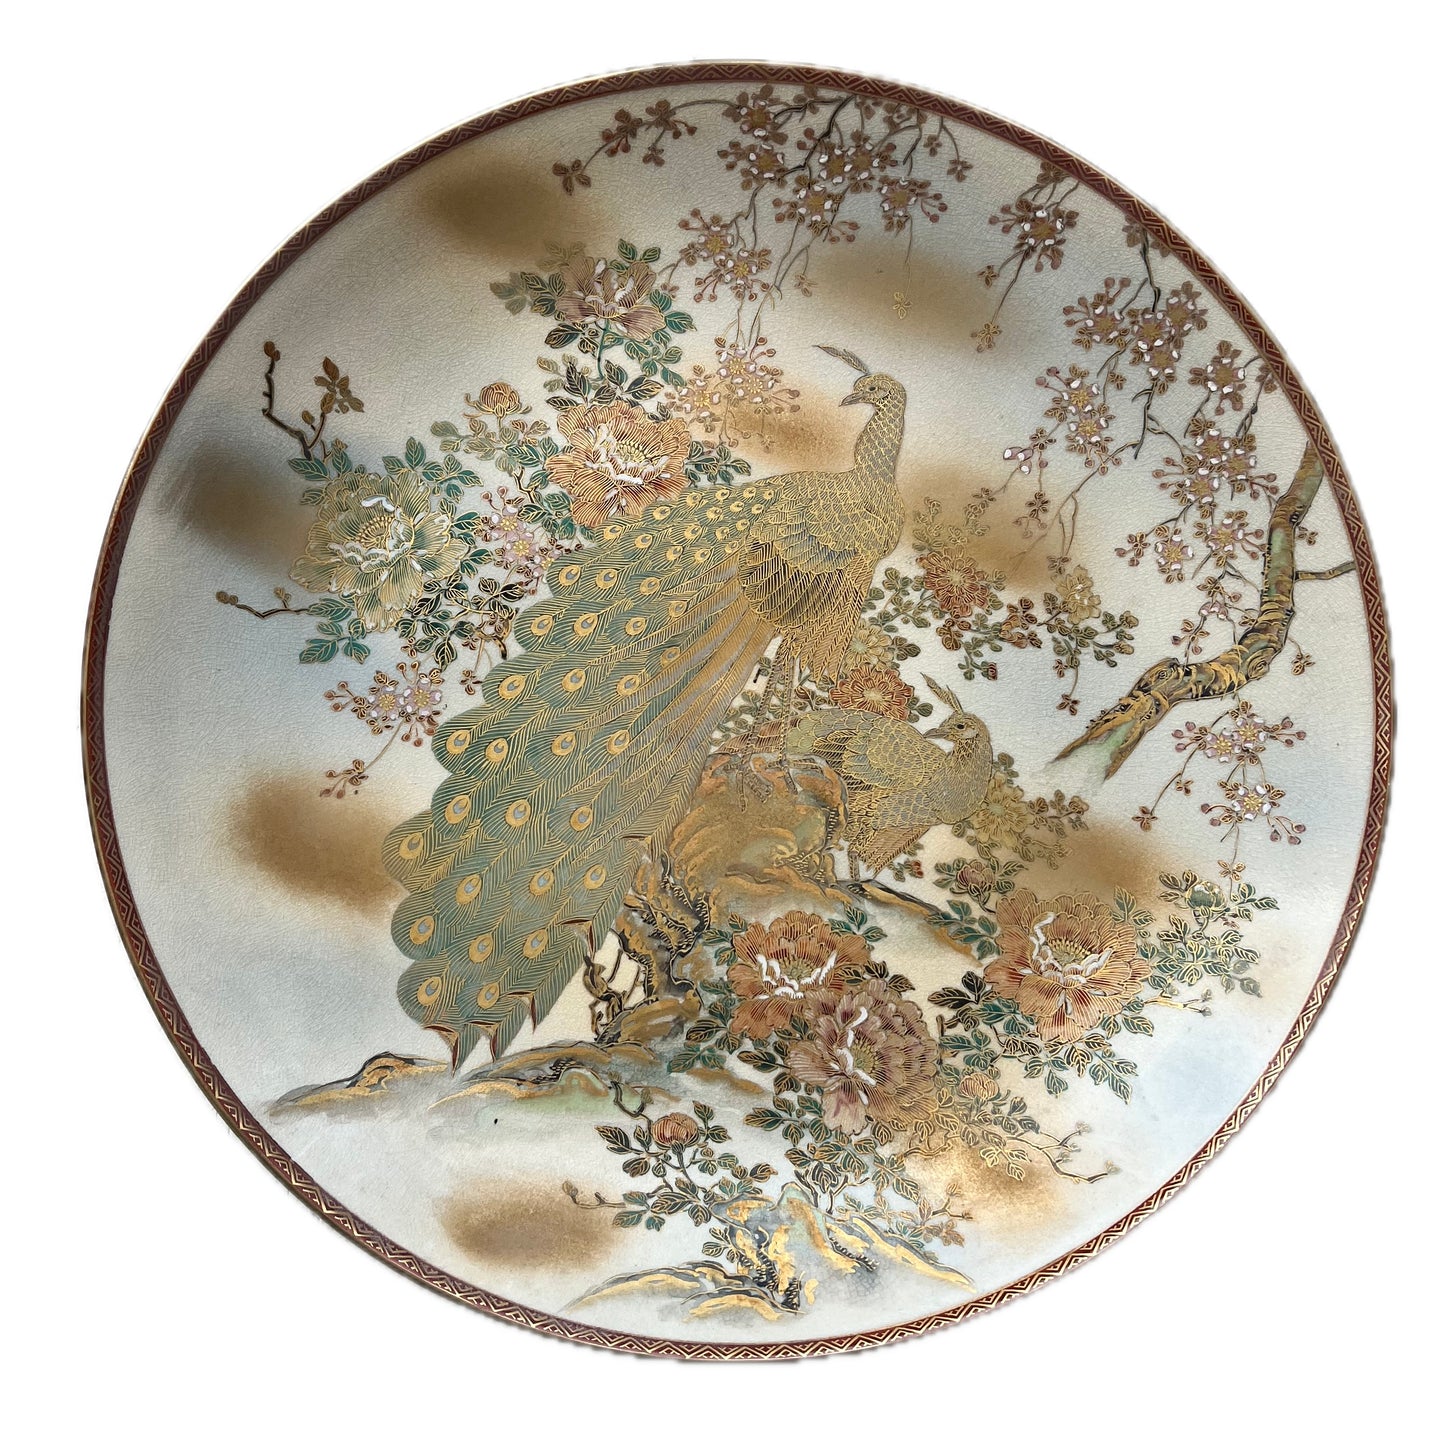 约明治末期至大正初年产的巨型日本萨摩瓷大盘